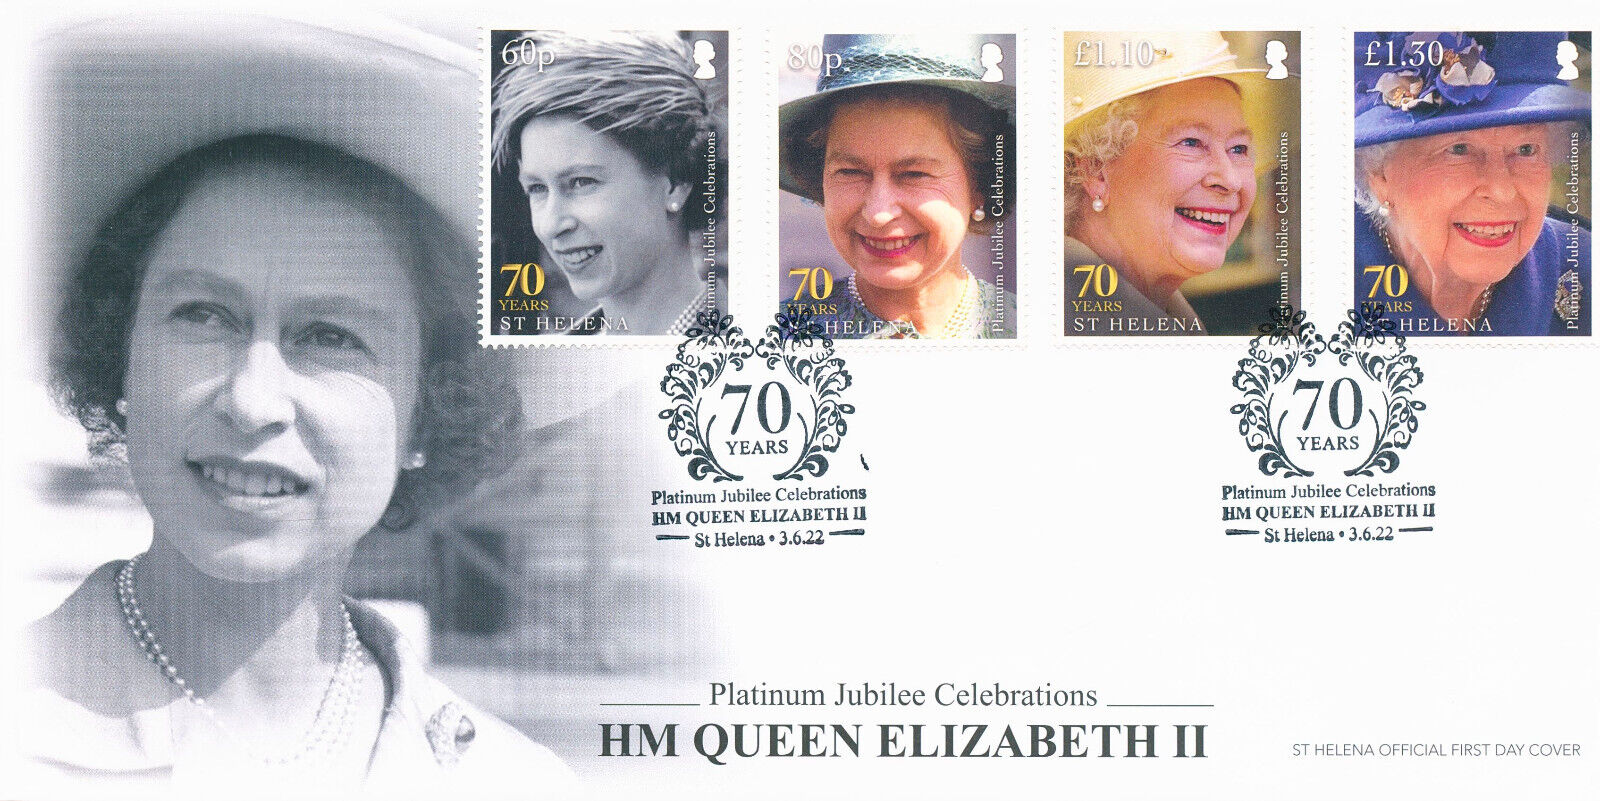 St Helena 2022 FDC Royalty Stamps Queen Elizabeth II Platinum Jubilee 4v Set